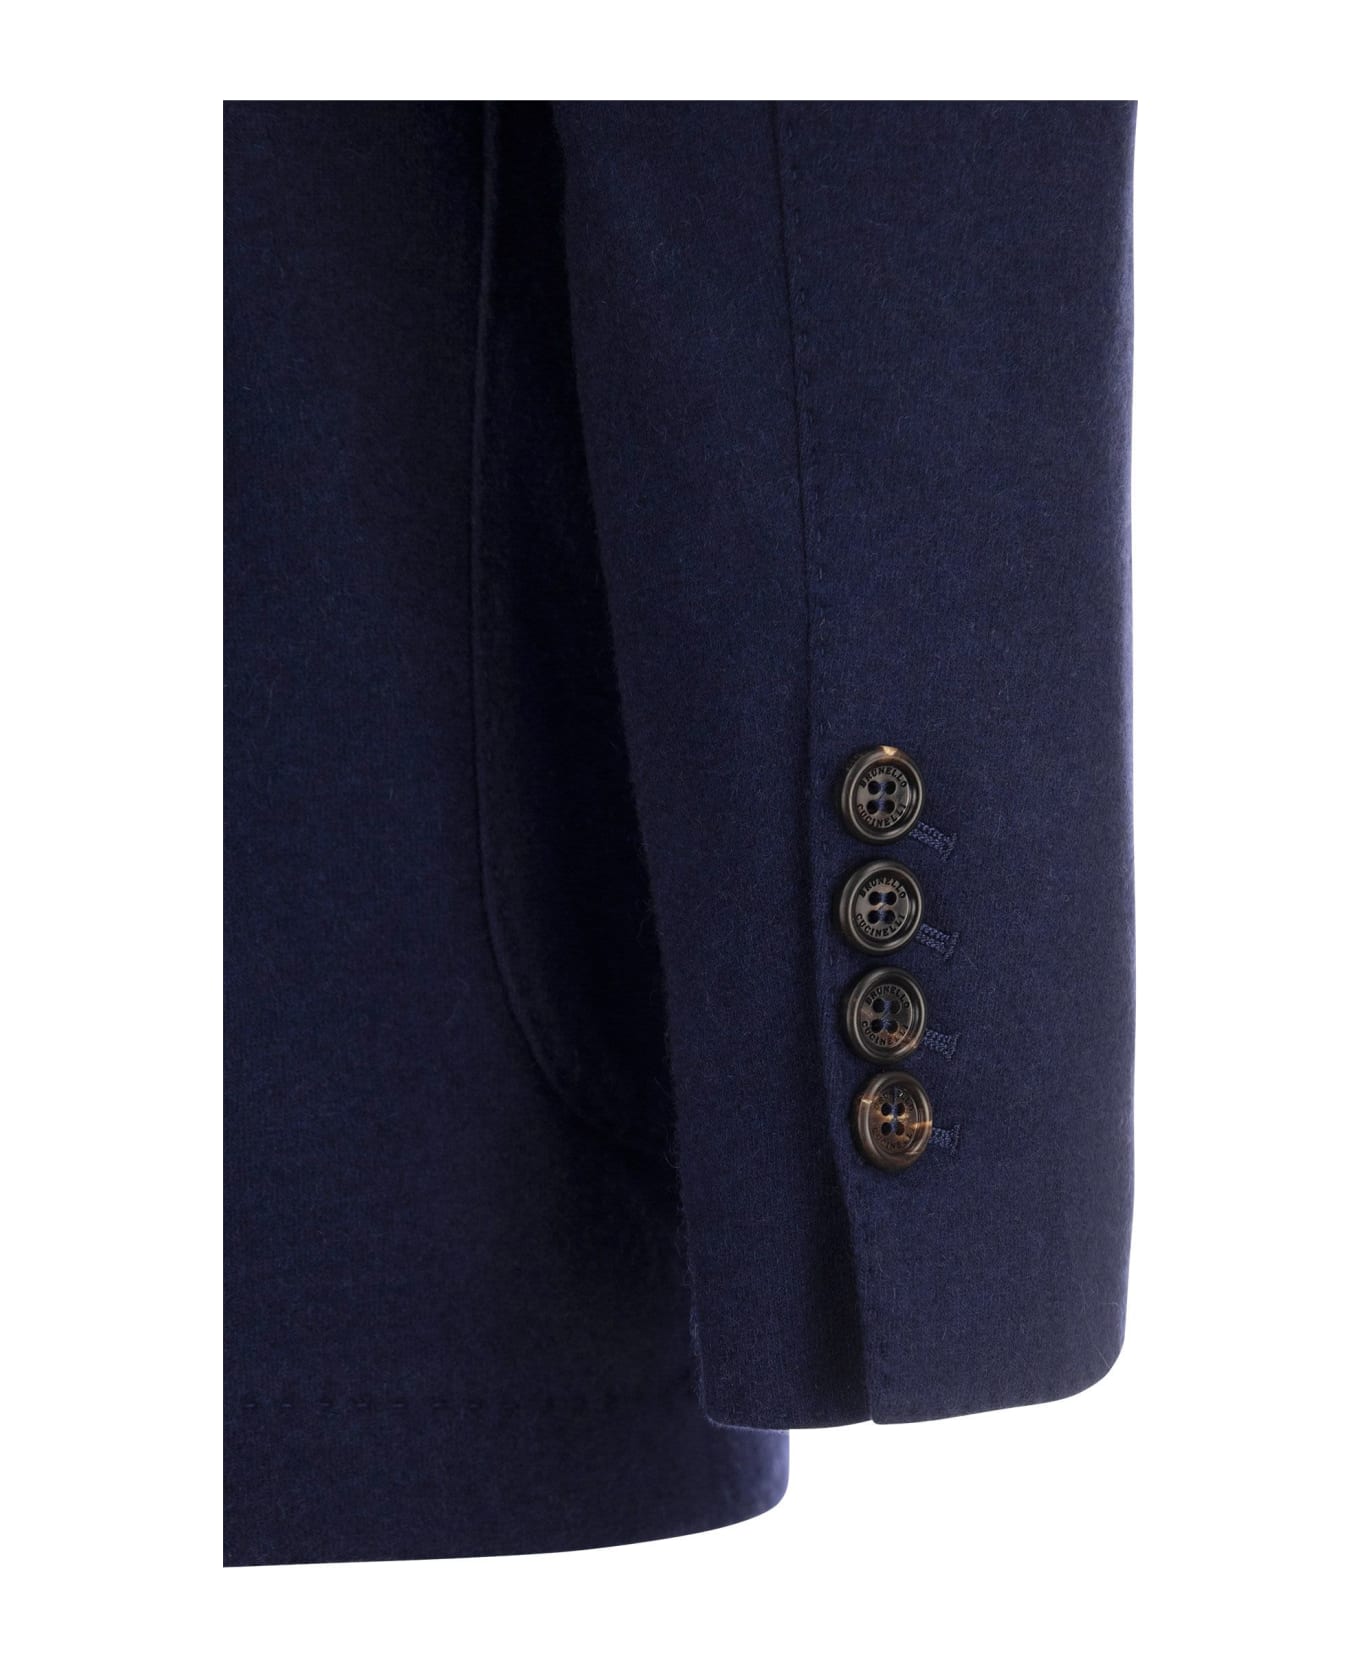 Brunello Cucinelli Cashmere Jersey Blazer With Patch Pockets - Cobalt スーツ